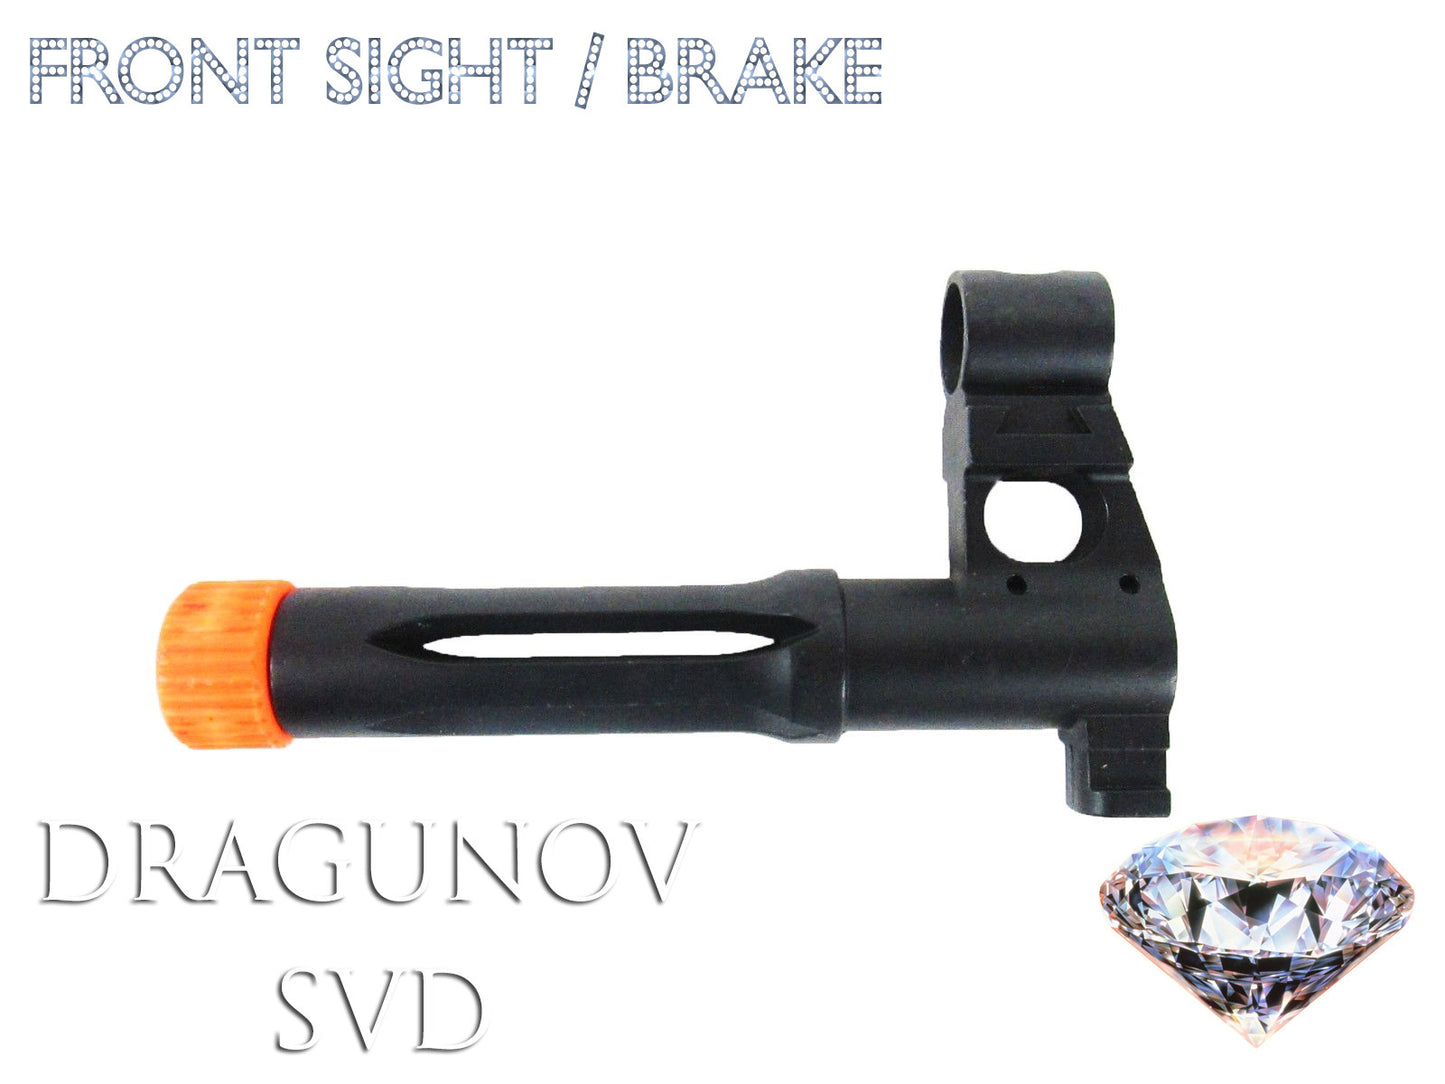 Full Metal Dragunov SVD Front Sight & Brake Combo